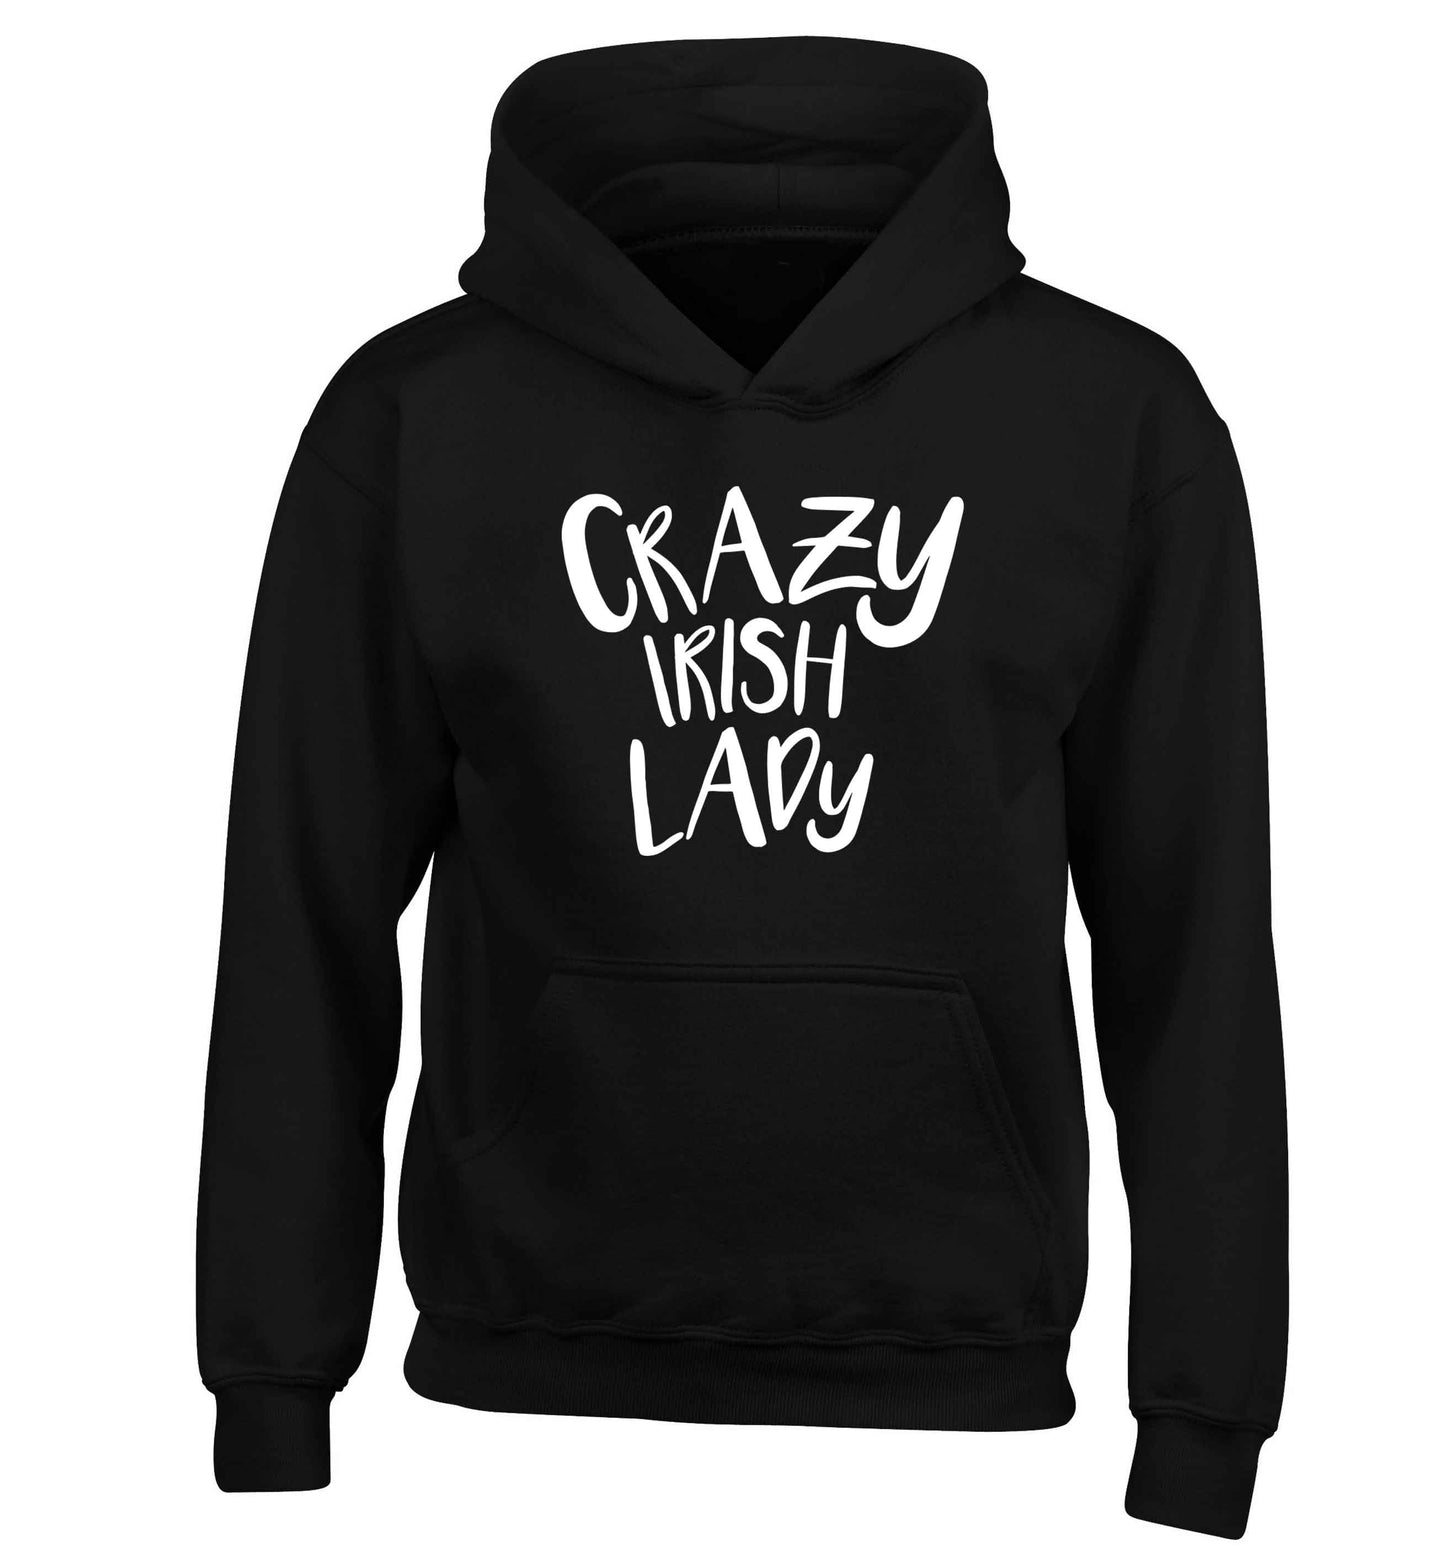 Crazy Irish lady children's black hoodie 12-13 Years